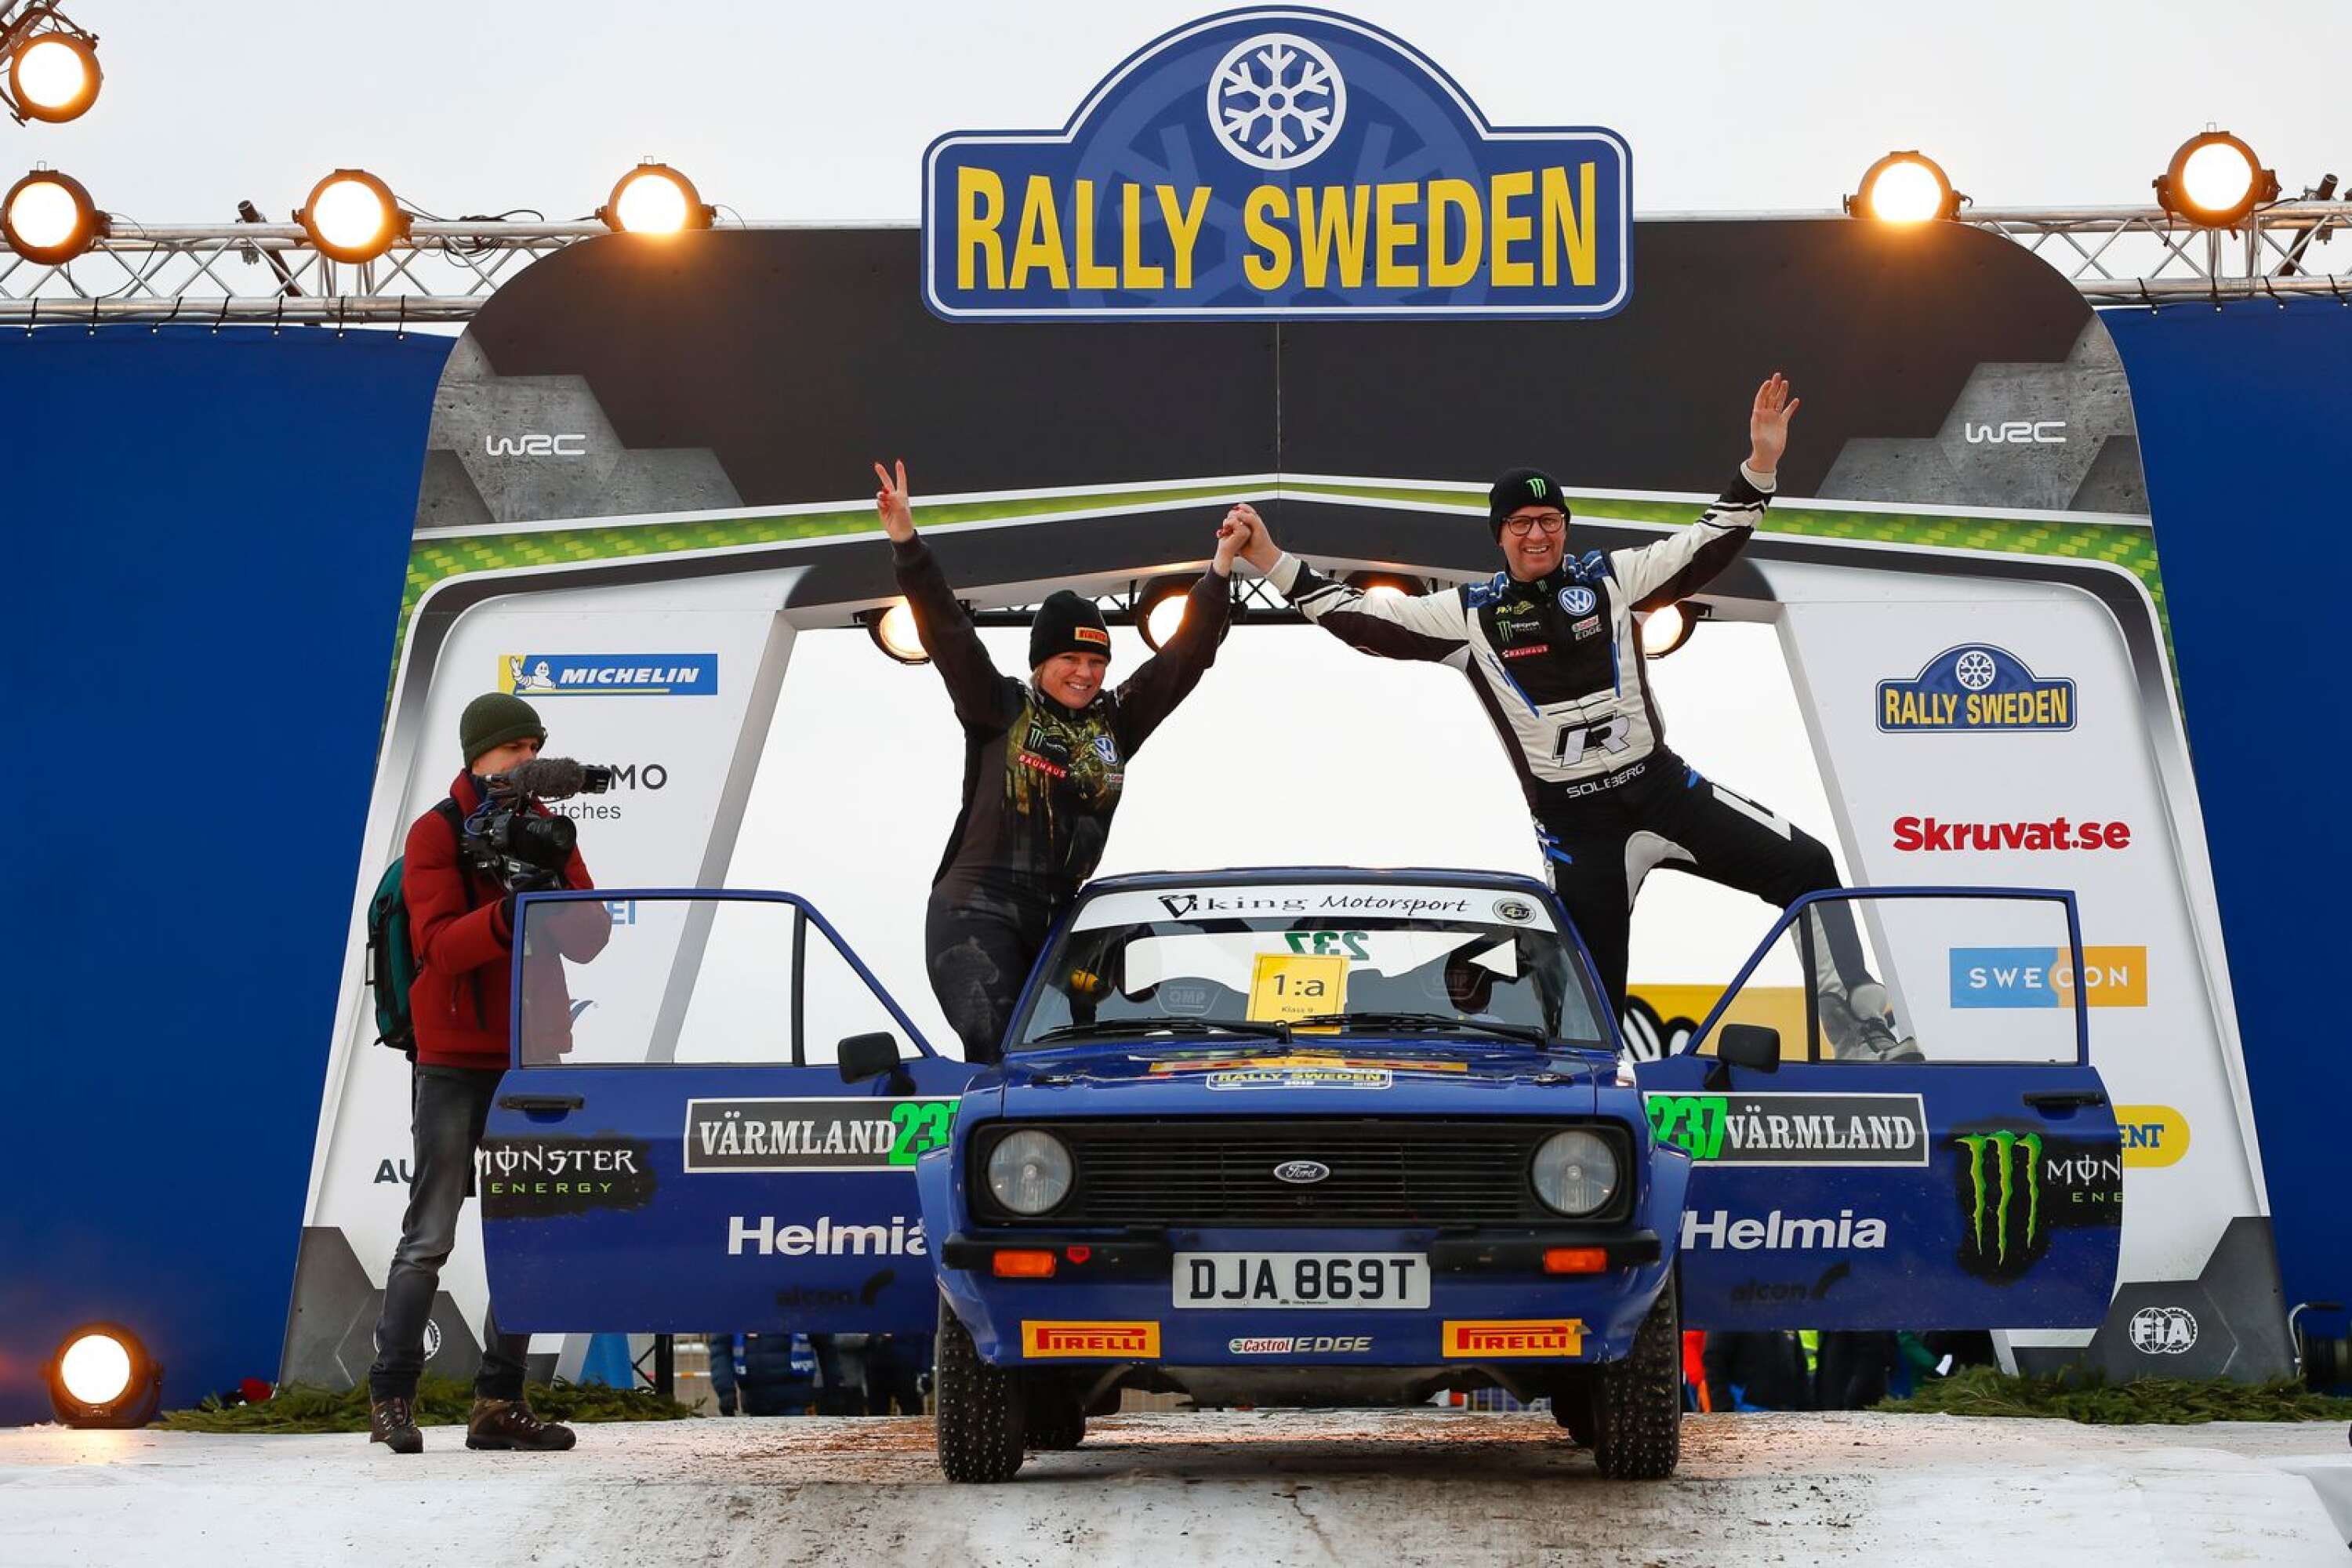 Pernilla och Petter efter segern i vinterns historiska Svenska rallyt.